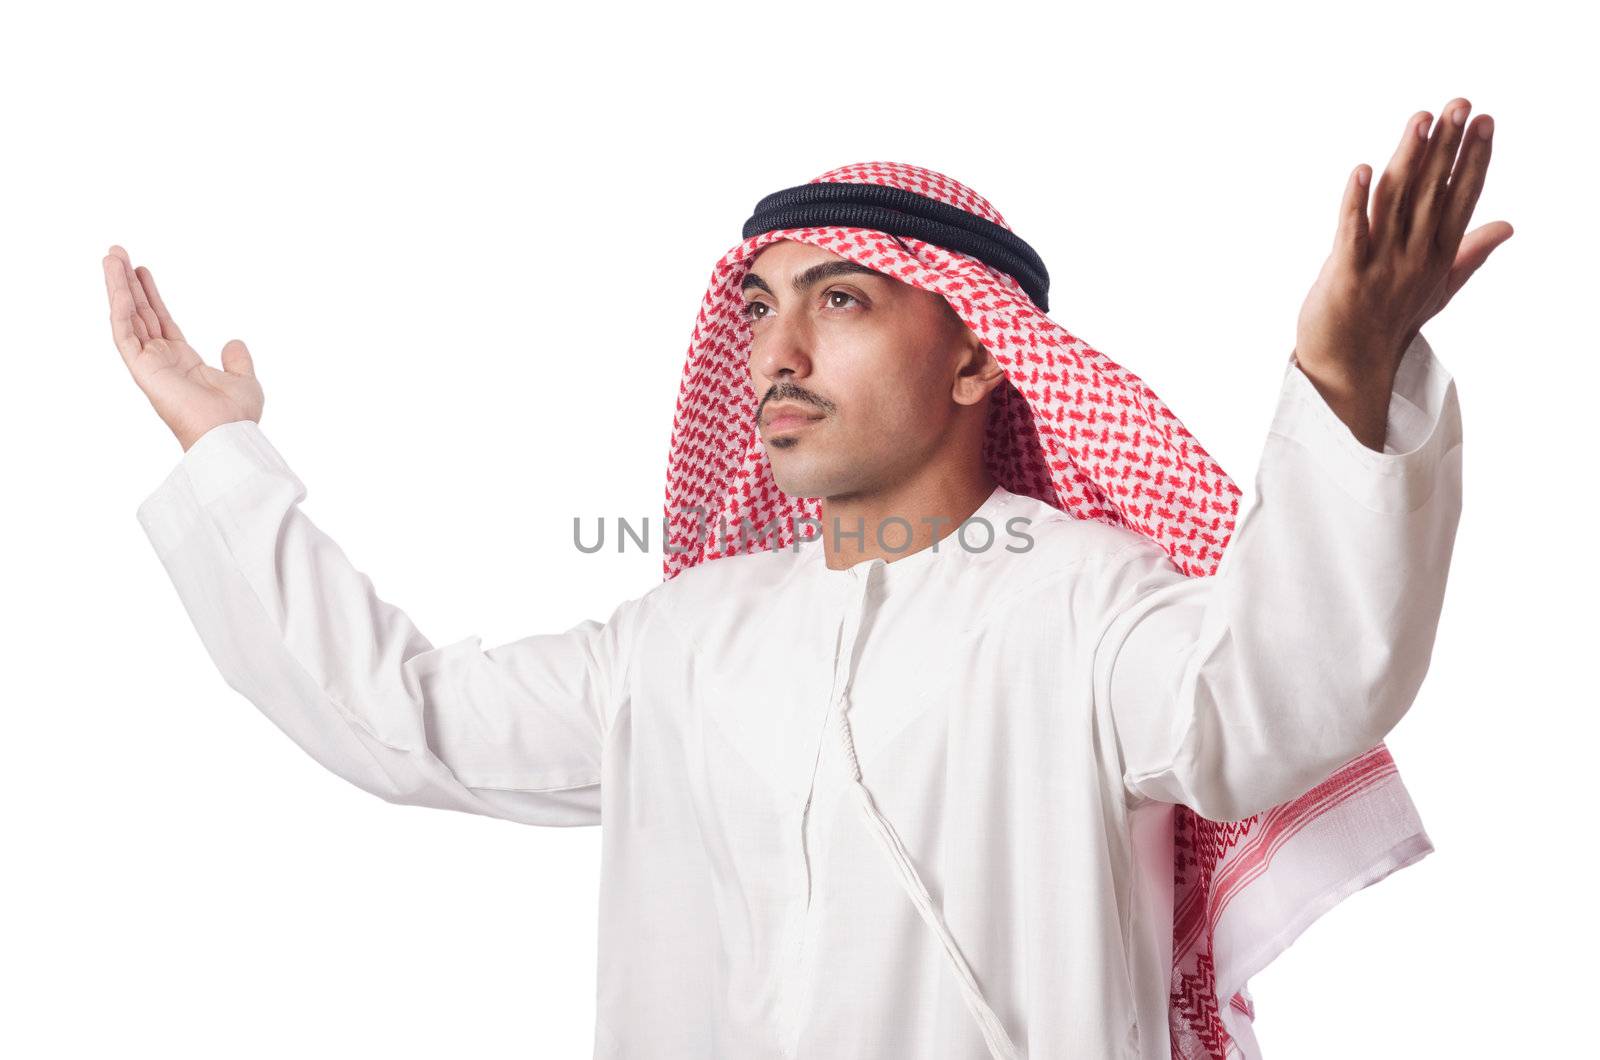 Arab man praying on white